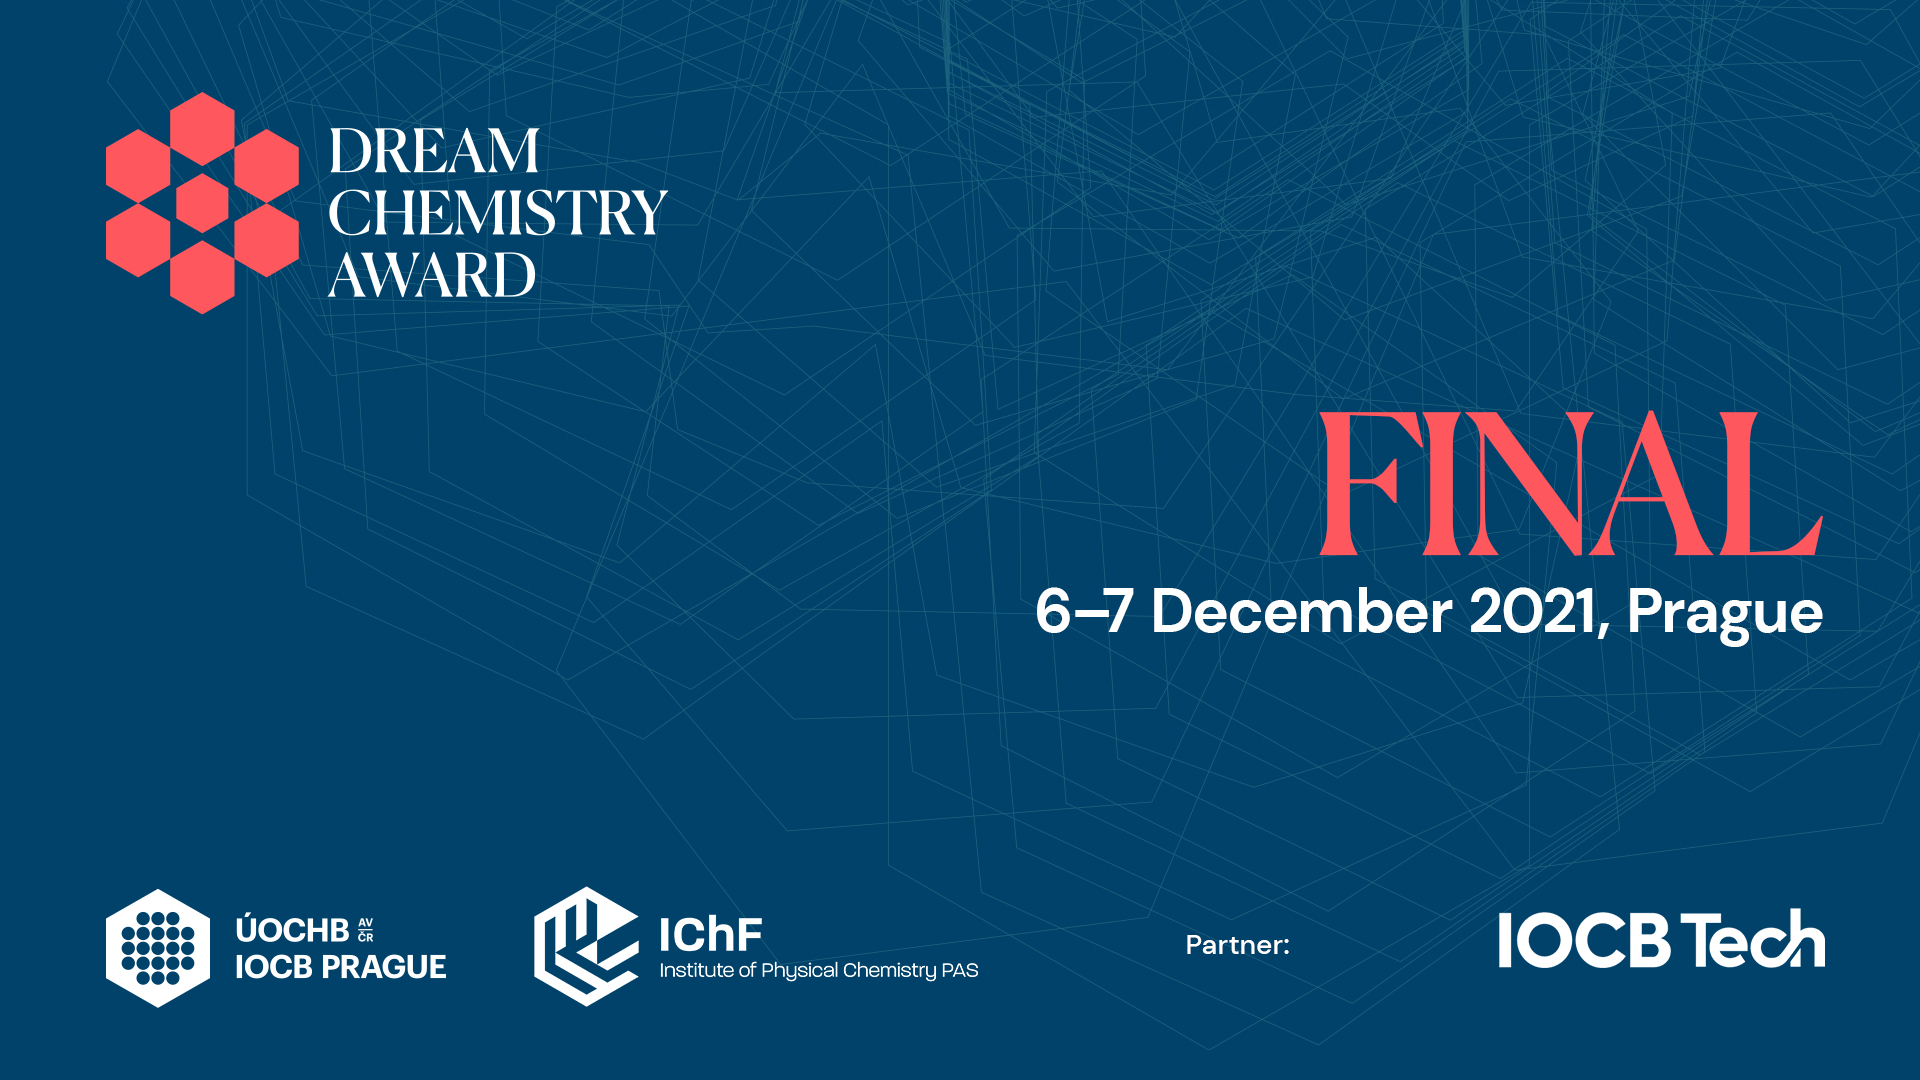 Dream Chemistry Award 2021 Final – Live stream